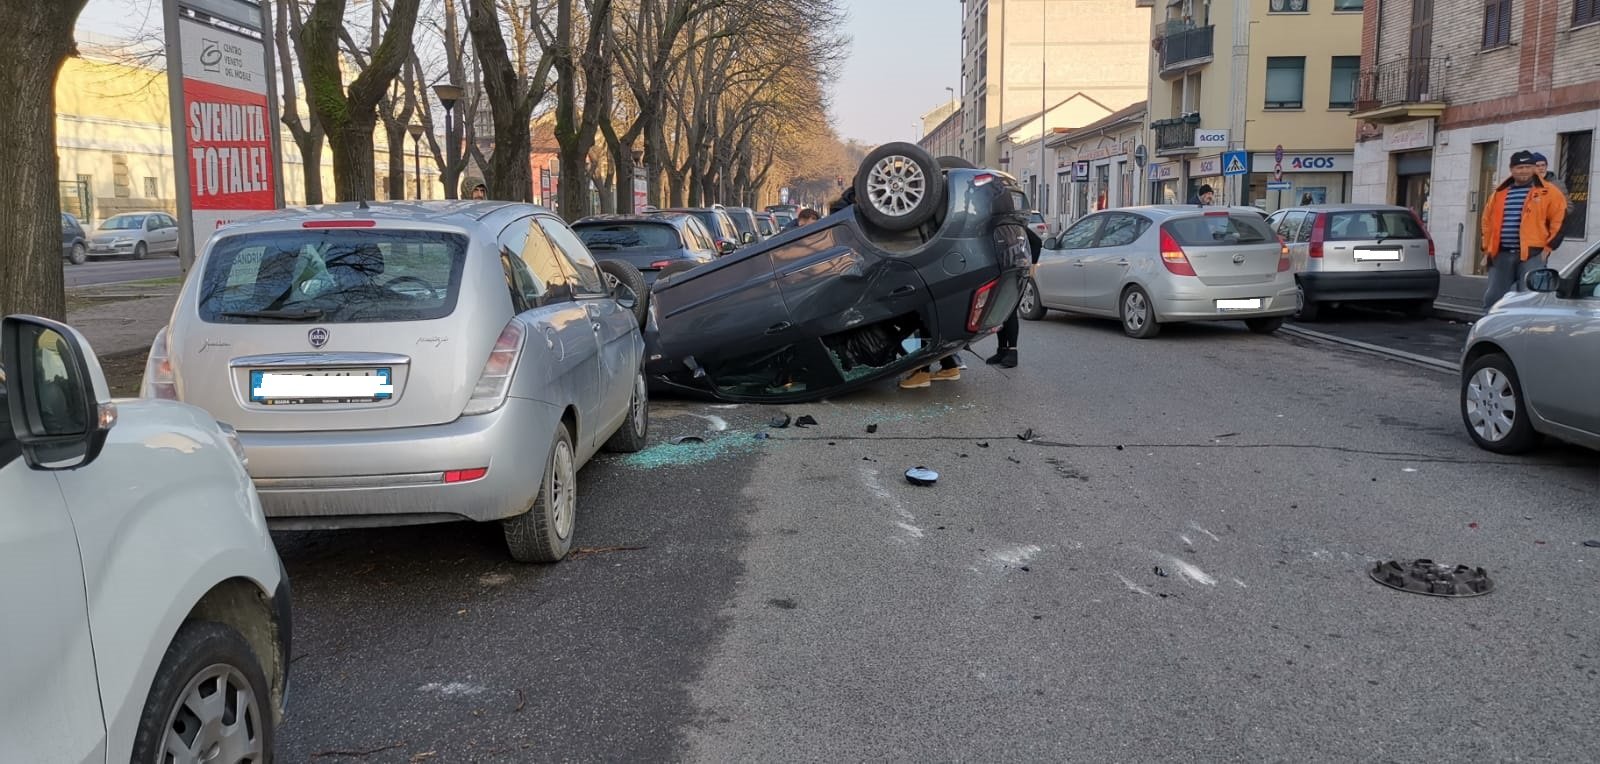 Incidente in Spalto Rovereto: auto colpisce un mezzo in doppia fila e si ribalta